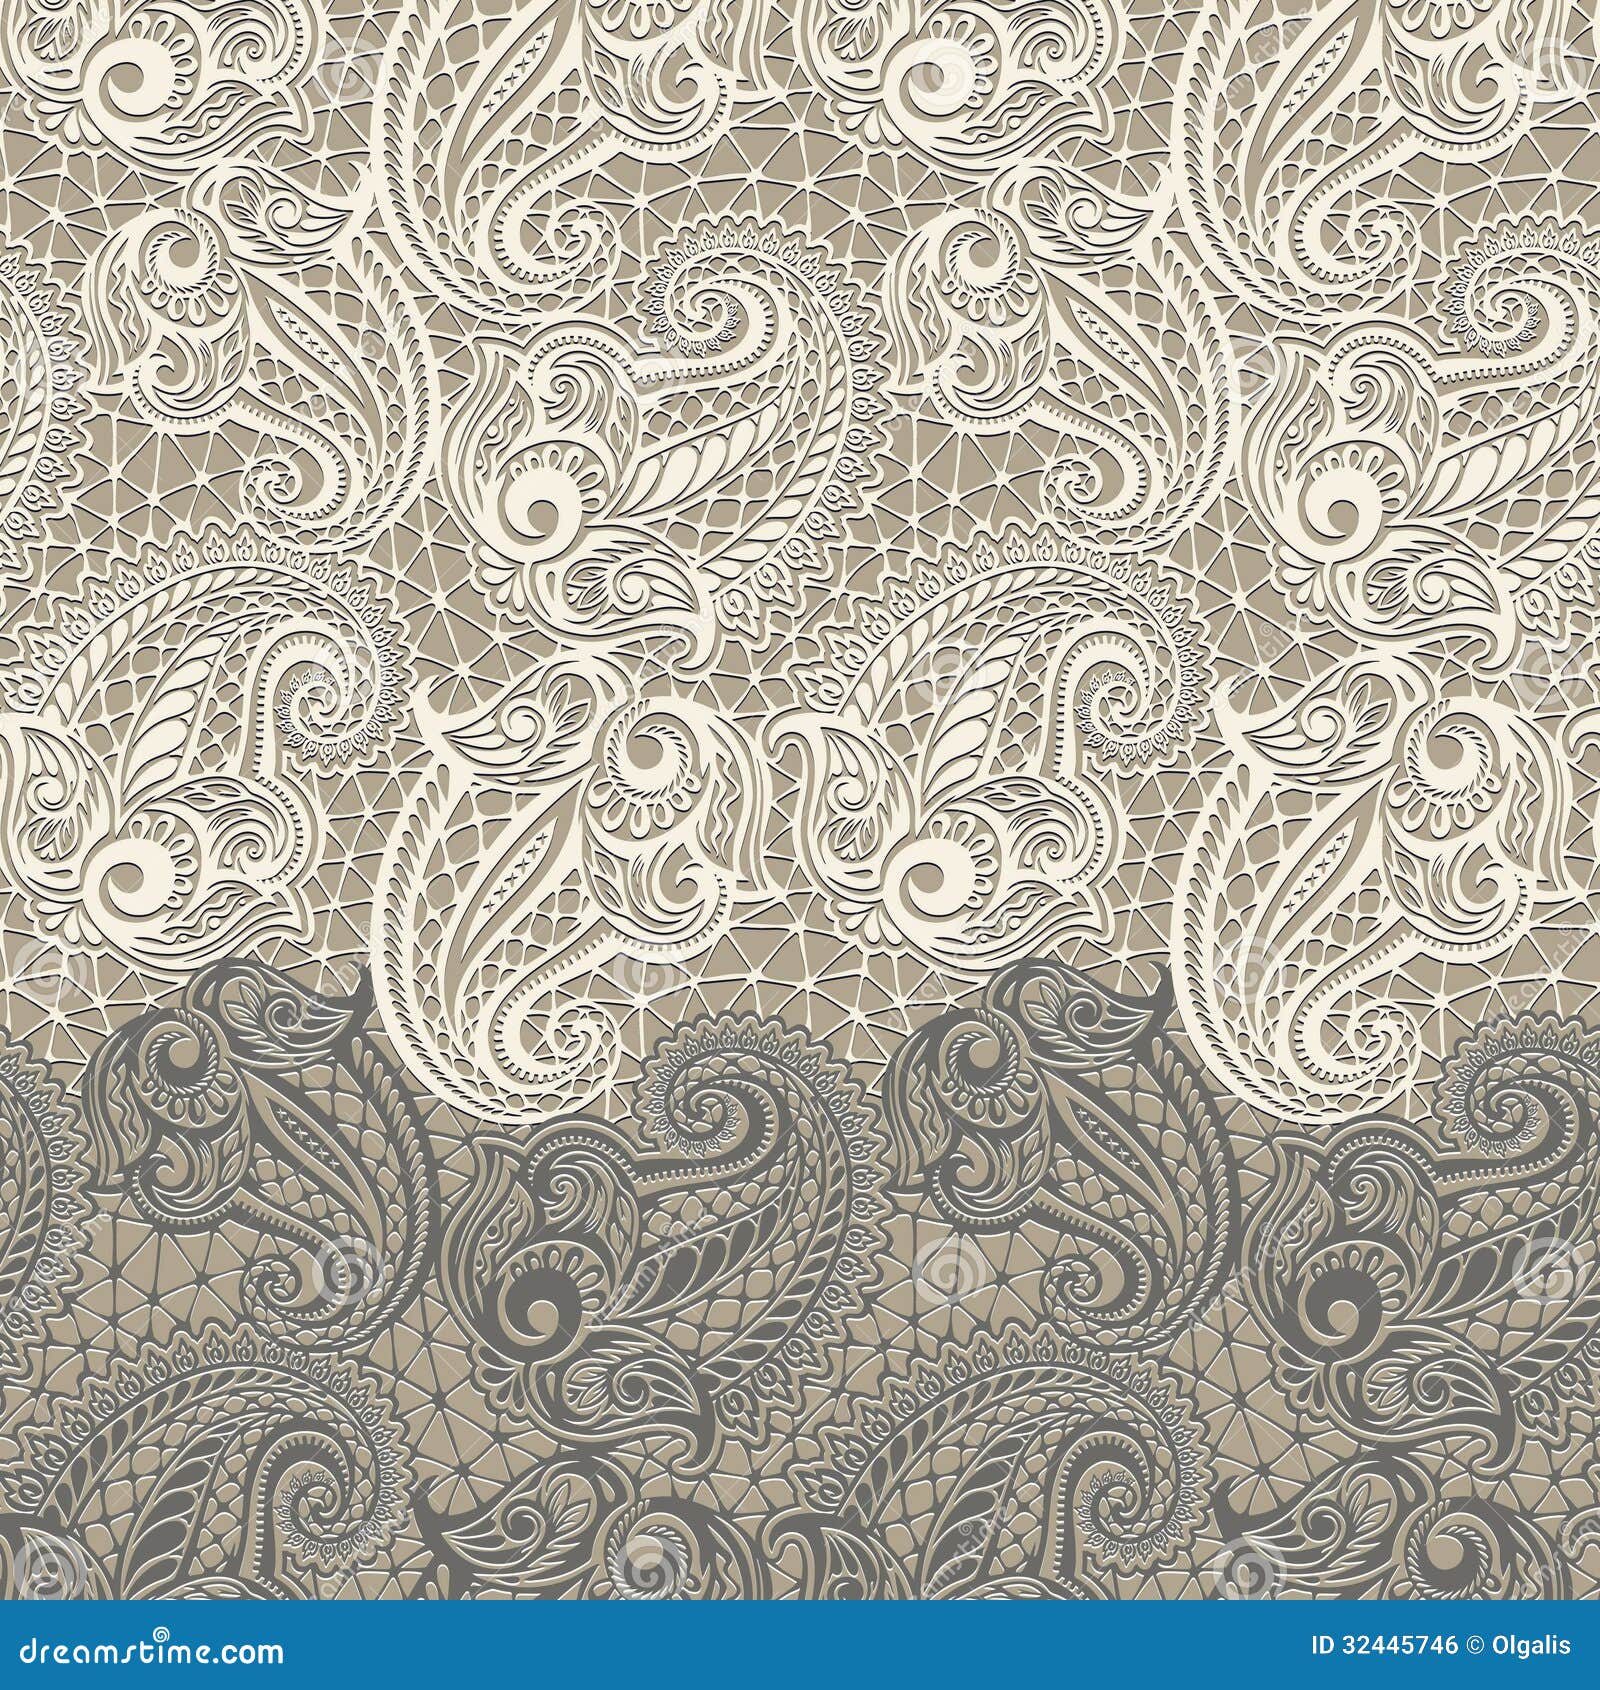 paisley seamless lace pattern